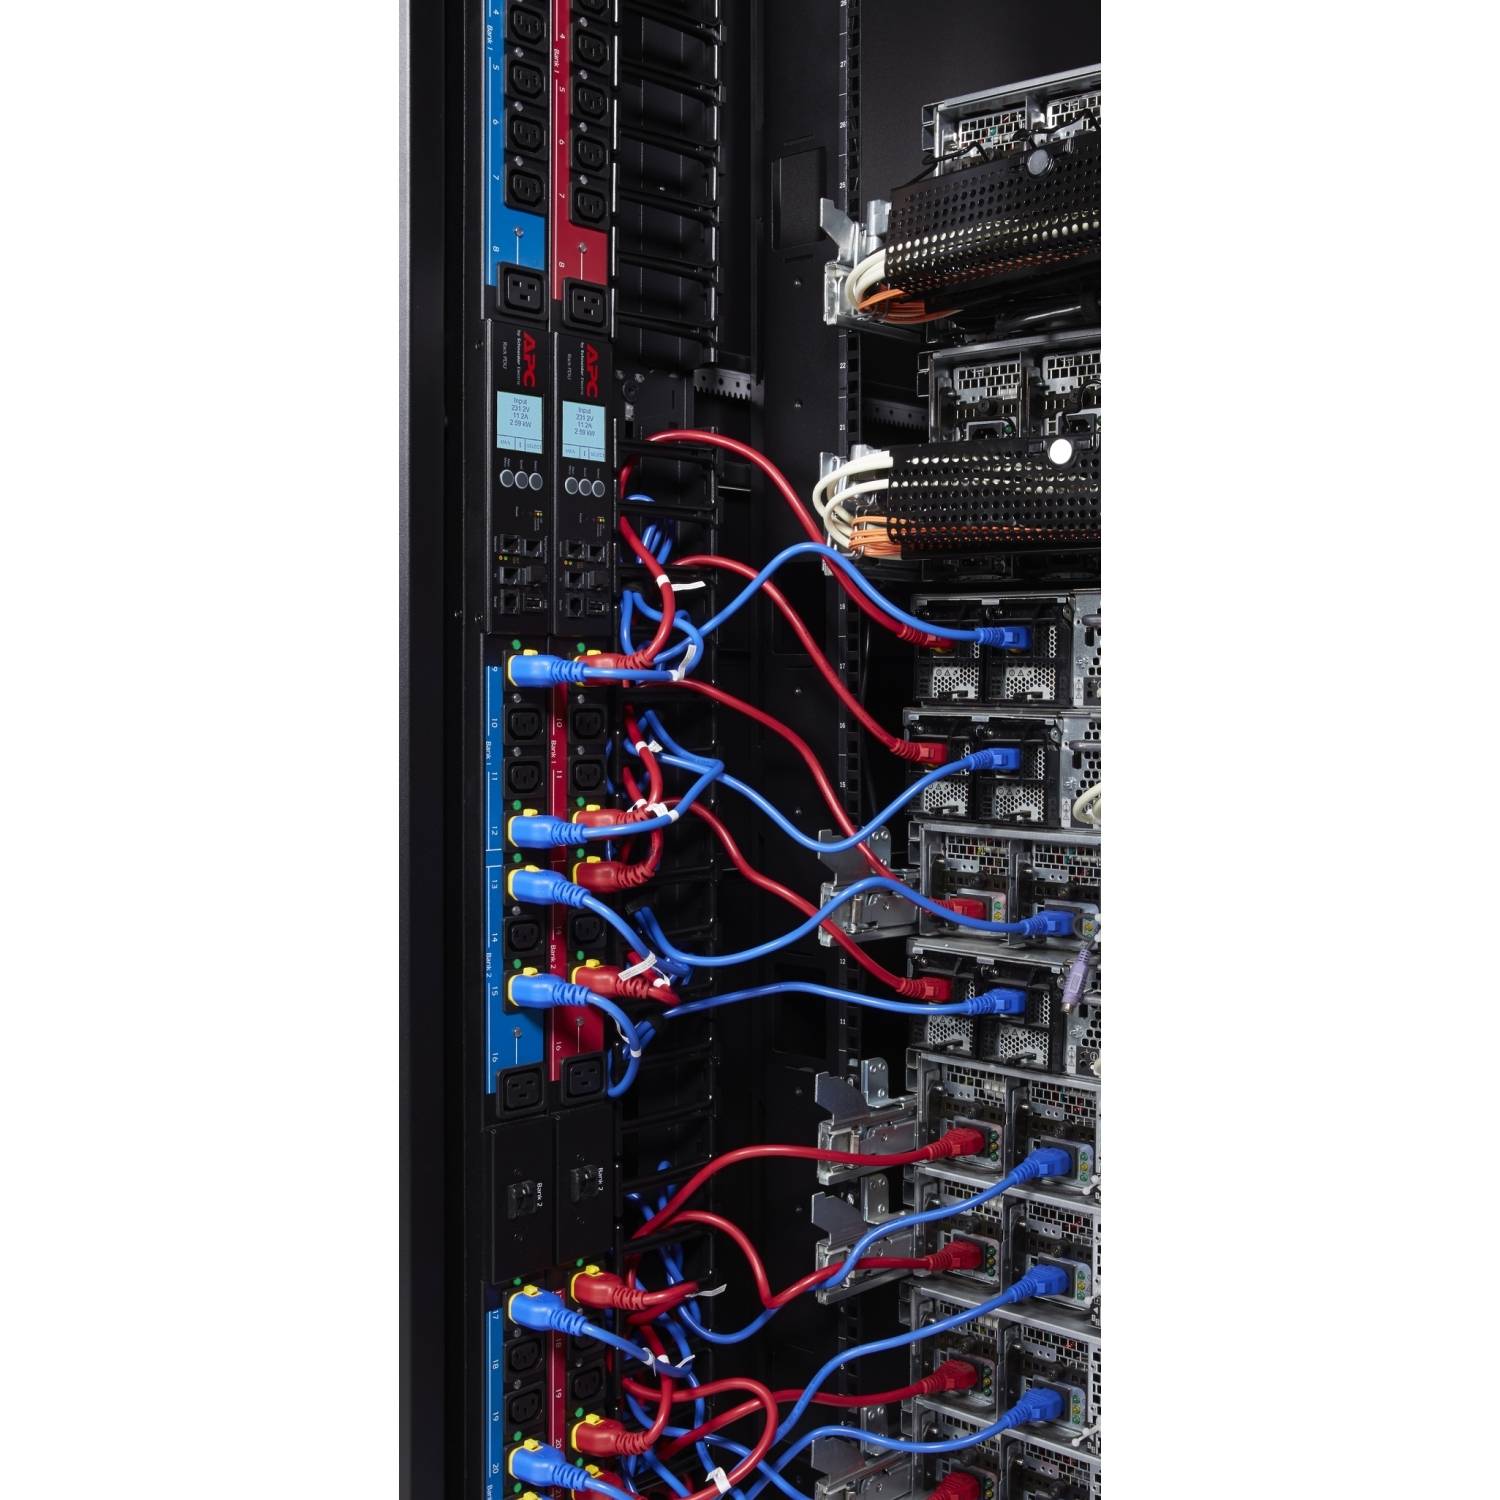 Rca Informatique - image du produit : POWER CORD KIT (6 EA) LOCKING C13 TO C14 1.8M BLUE